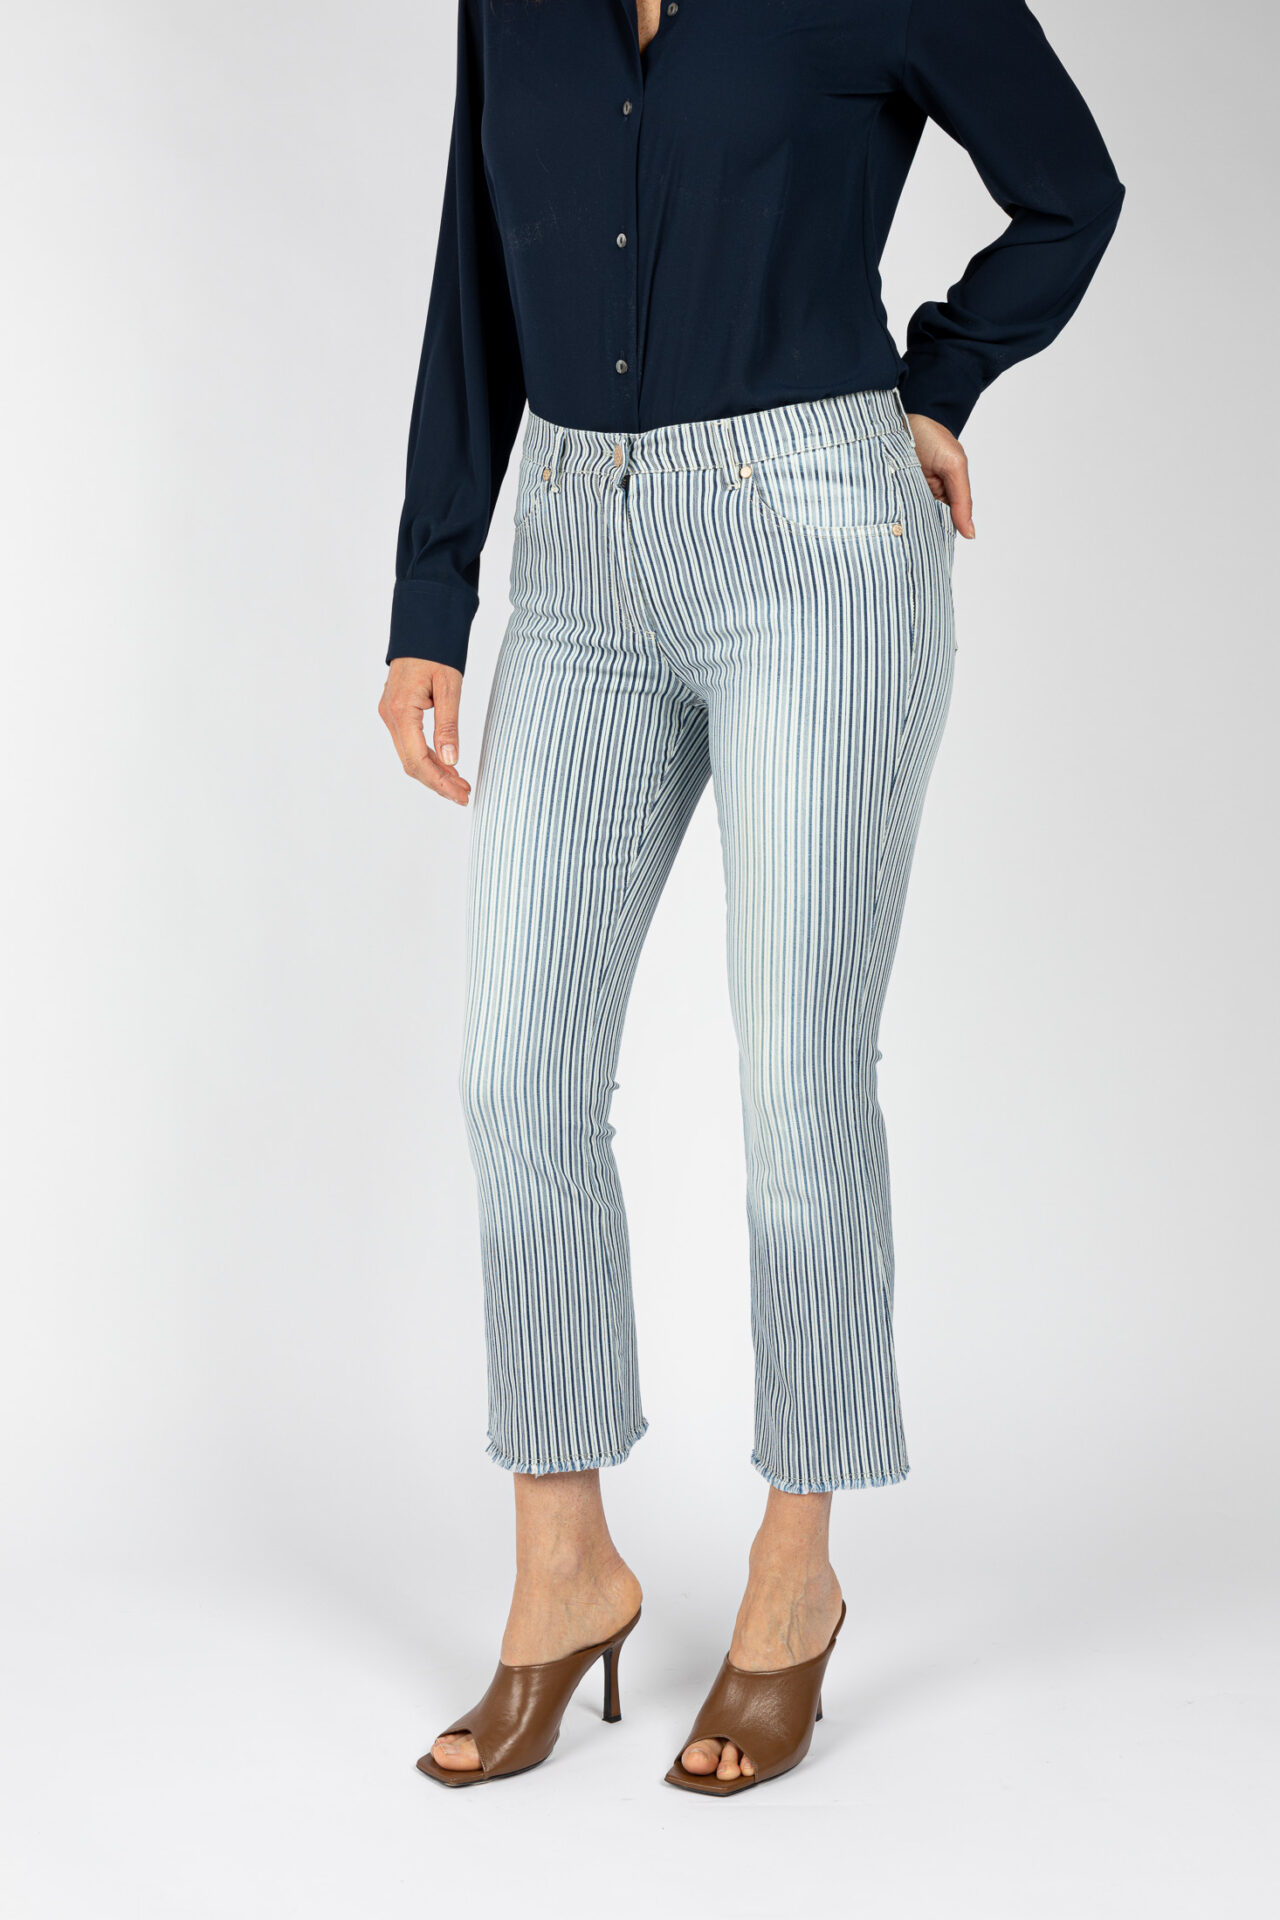 Pantaloni linea Jeans fondo a trombetta tessuto disegno riga colore blu P19946LM - 3